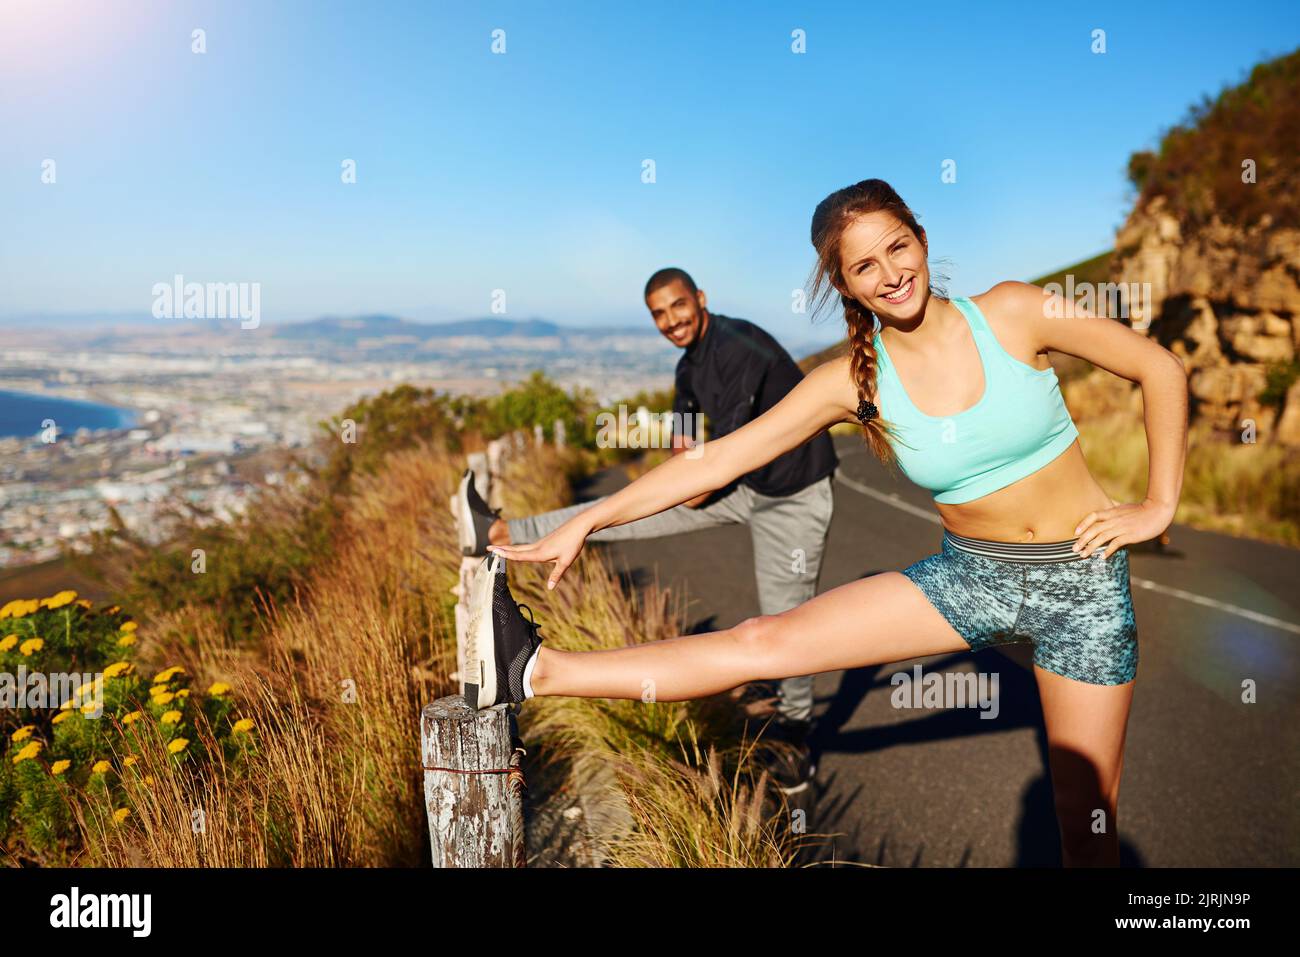 Allungandosi per rinforzare il corpo. Ritratto di una giovane coppia sportiva che si allunga prima di una corsa all'aperto. Foto Stock